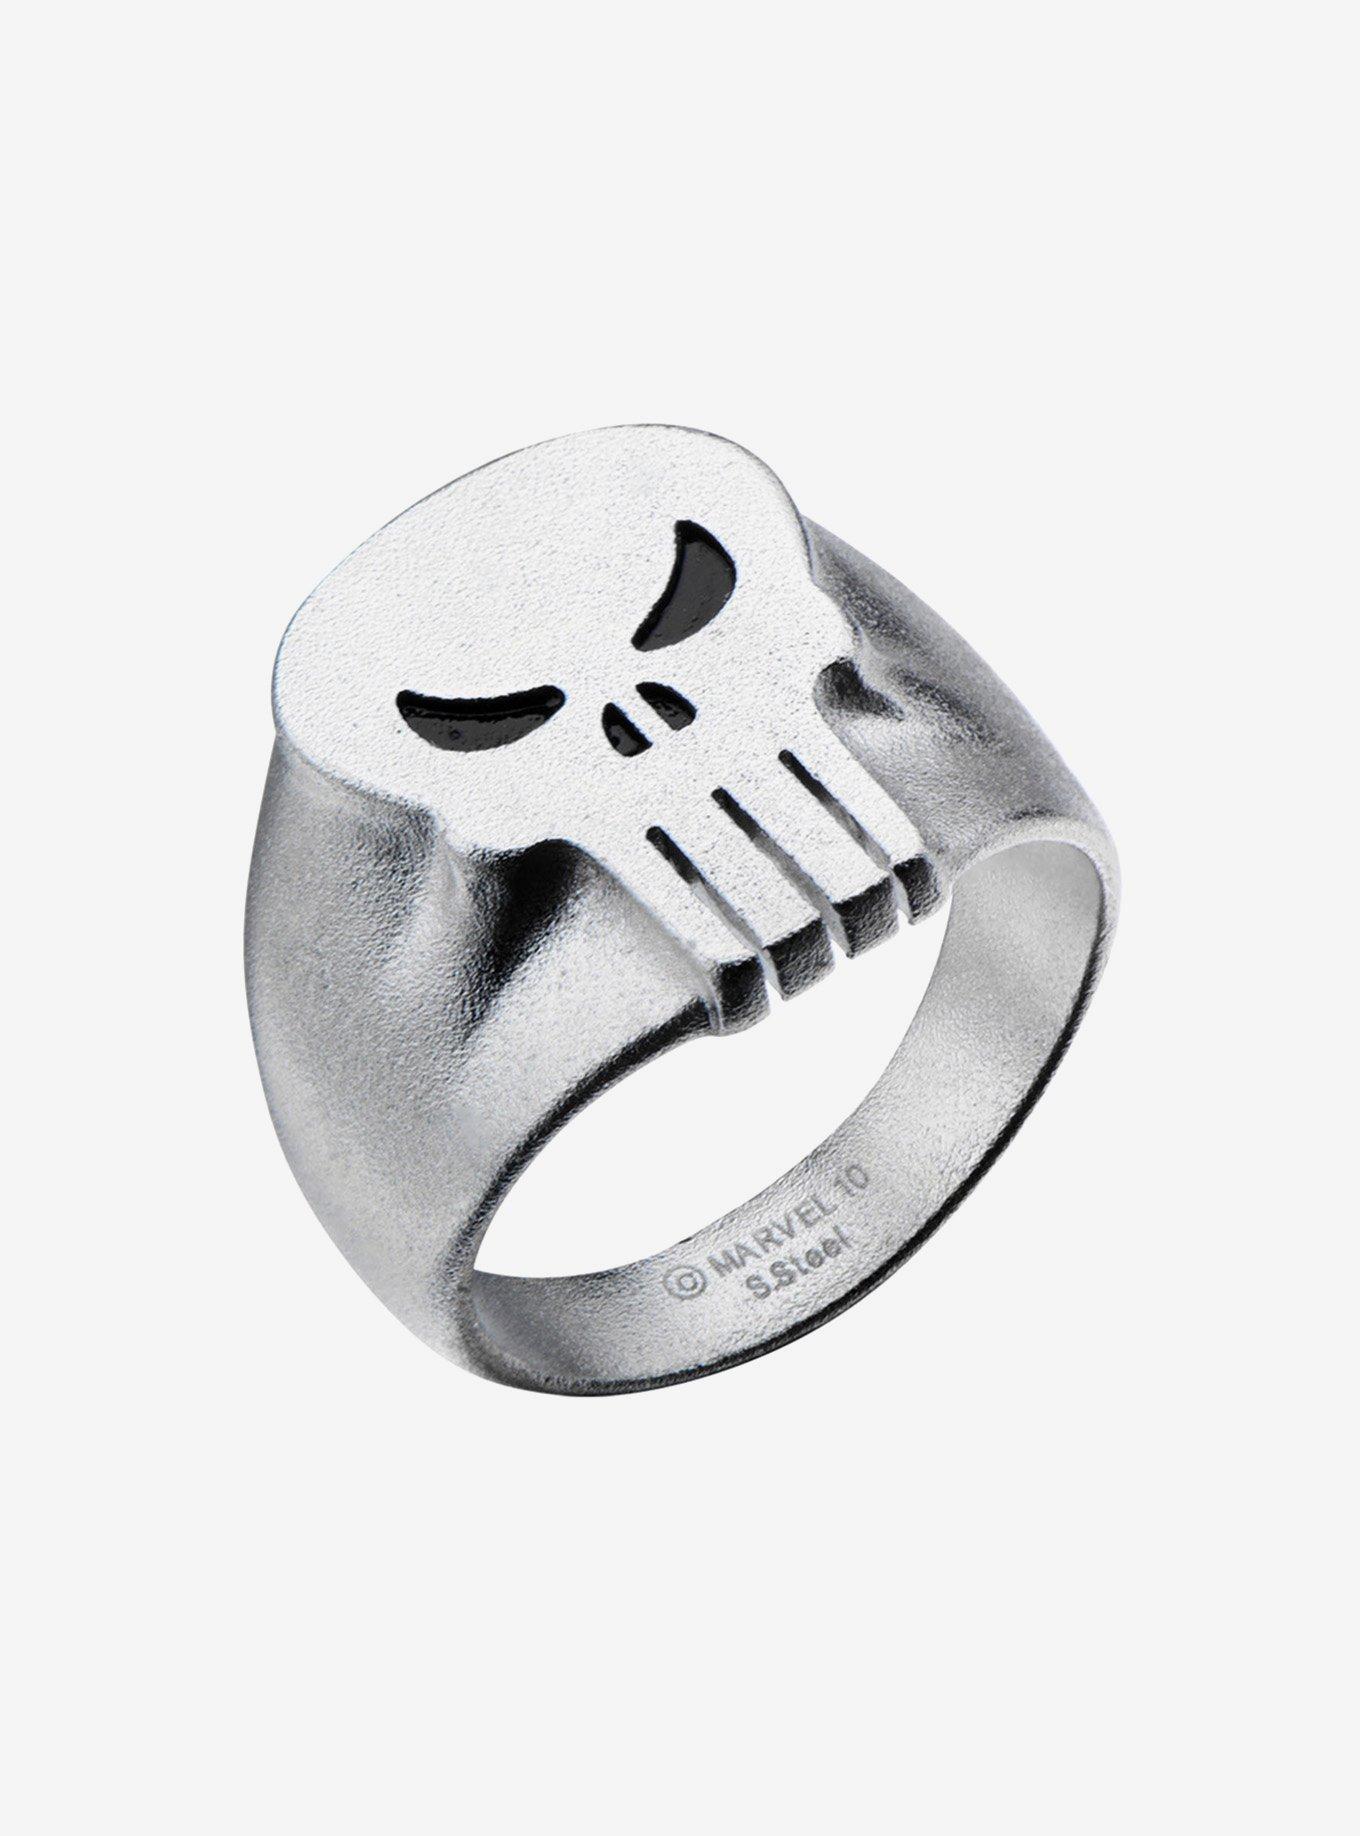 Marvel Punisher Skull Ring